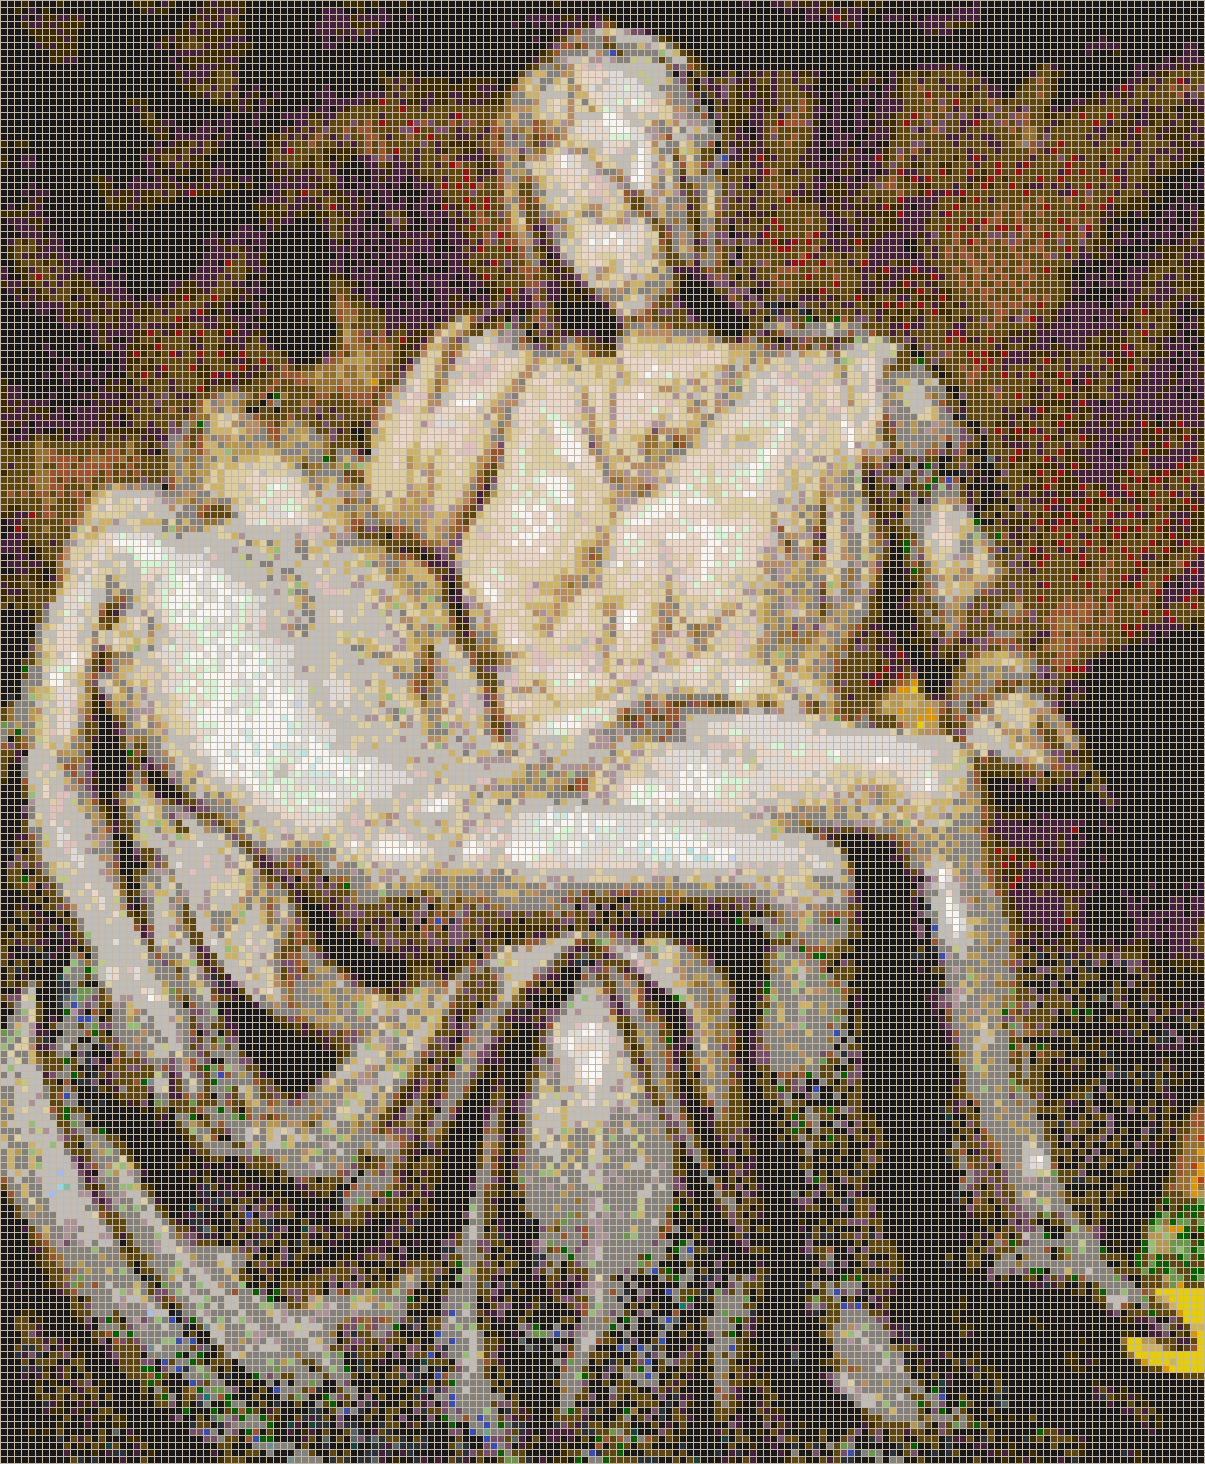 Michelangelo's Pietà - Mosaic Tile Picture Art